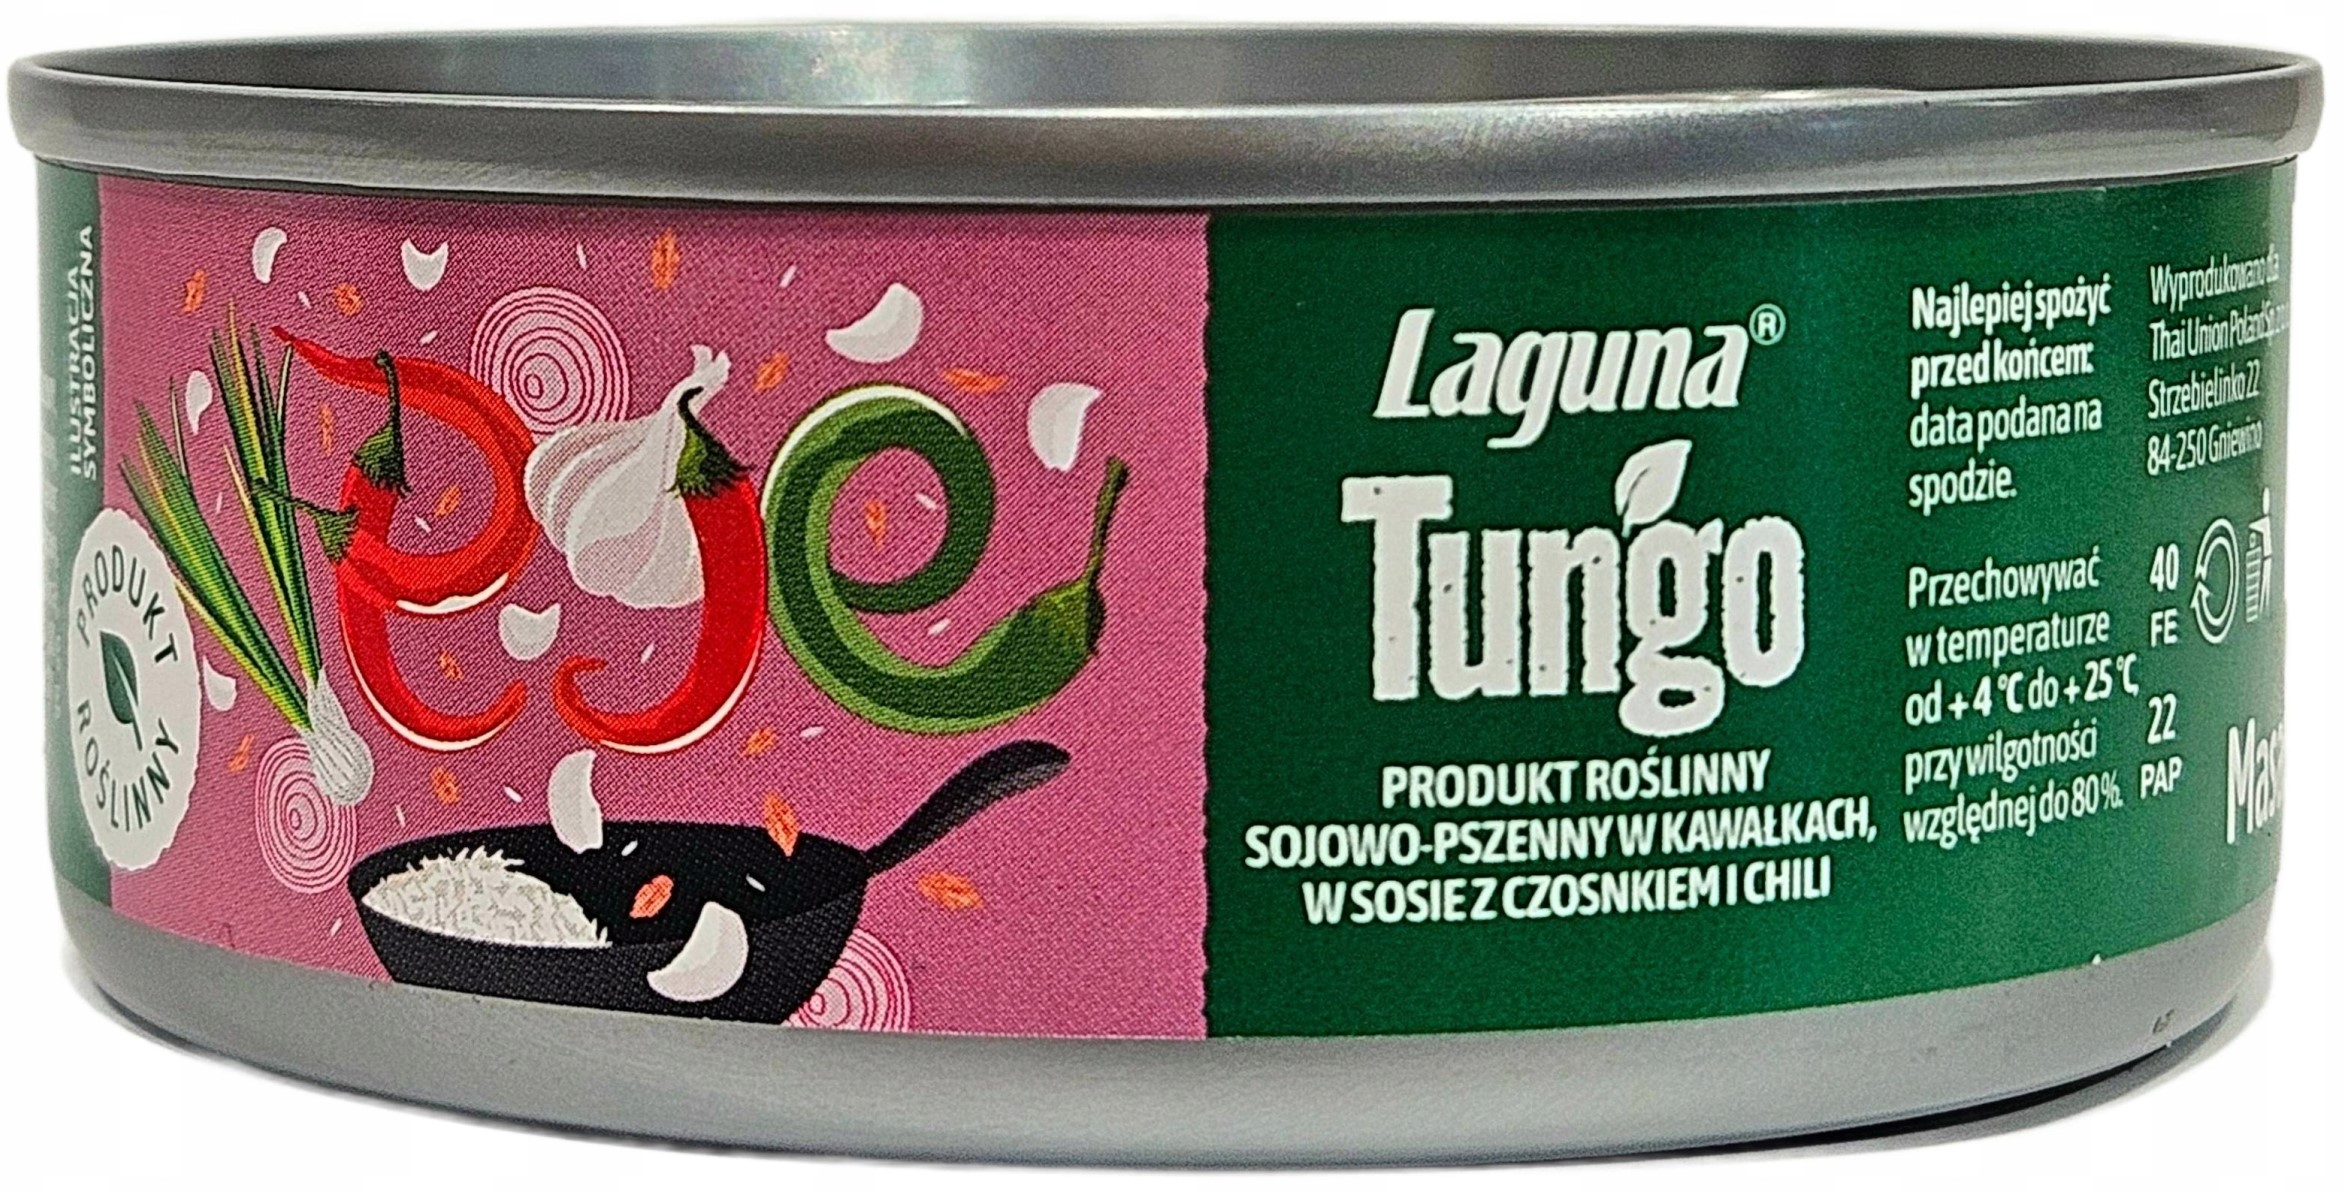 Laguna Tungo Produkt roślinny  sojowo-pszenny w kawałkach w sosie z czosnkiem i chili